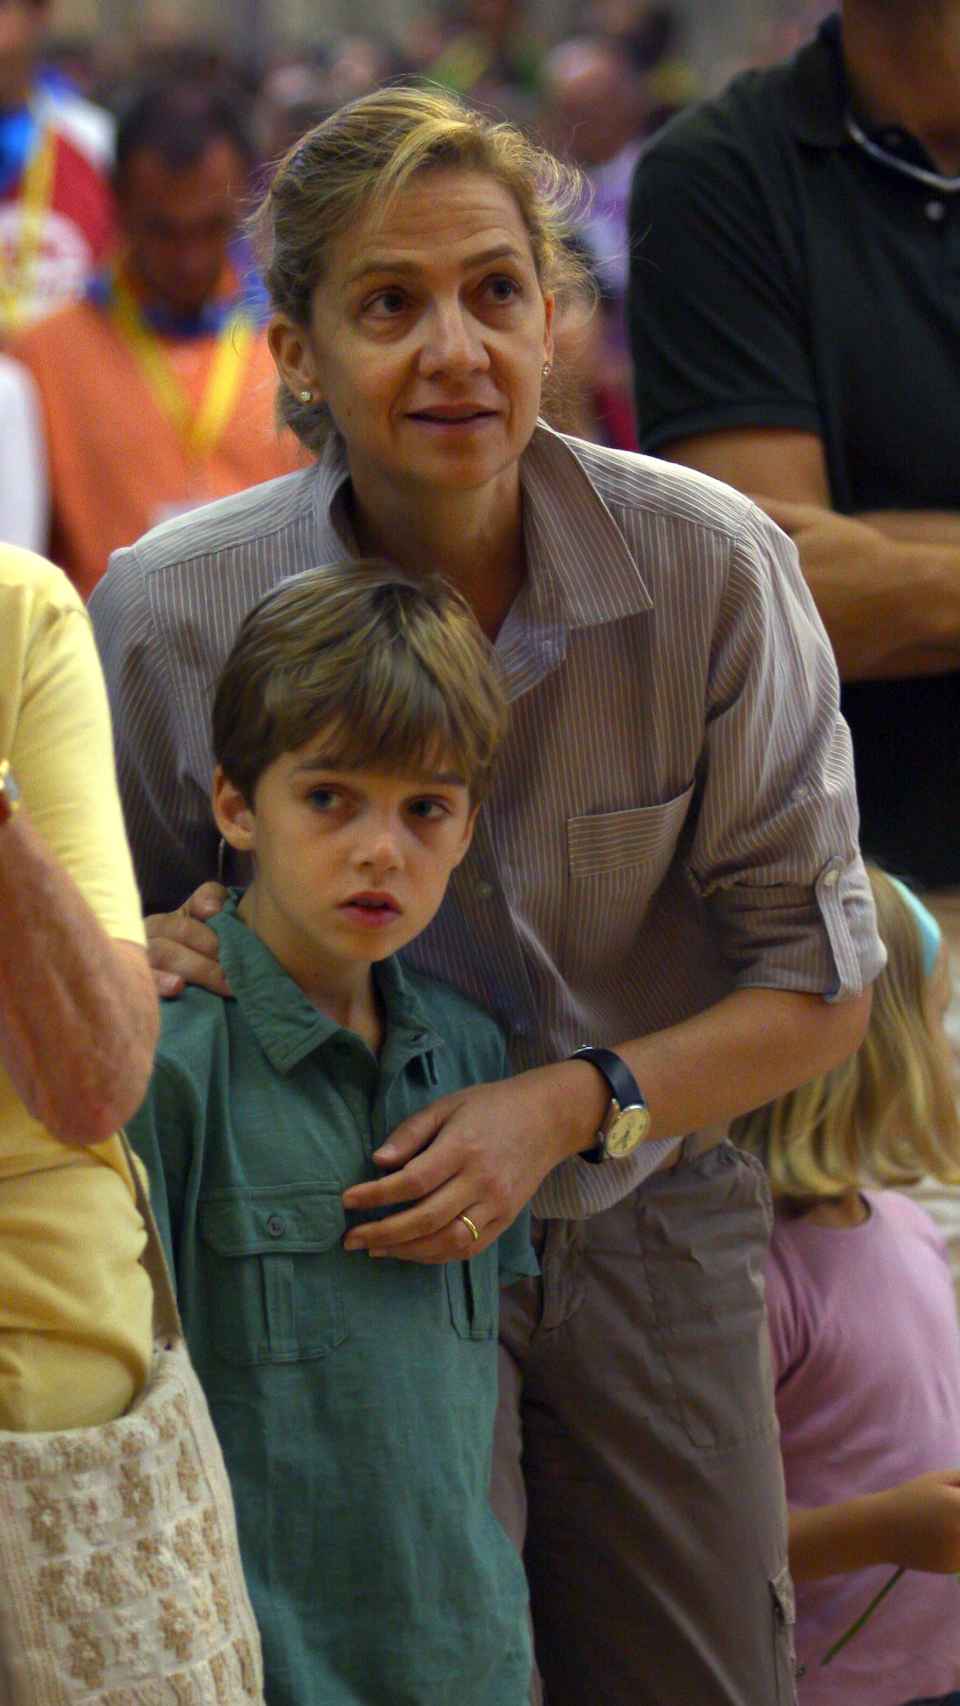 La exduquesa de Palma junto a su hijo Pablo Nicolás en una imagen del año 2010.